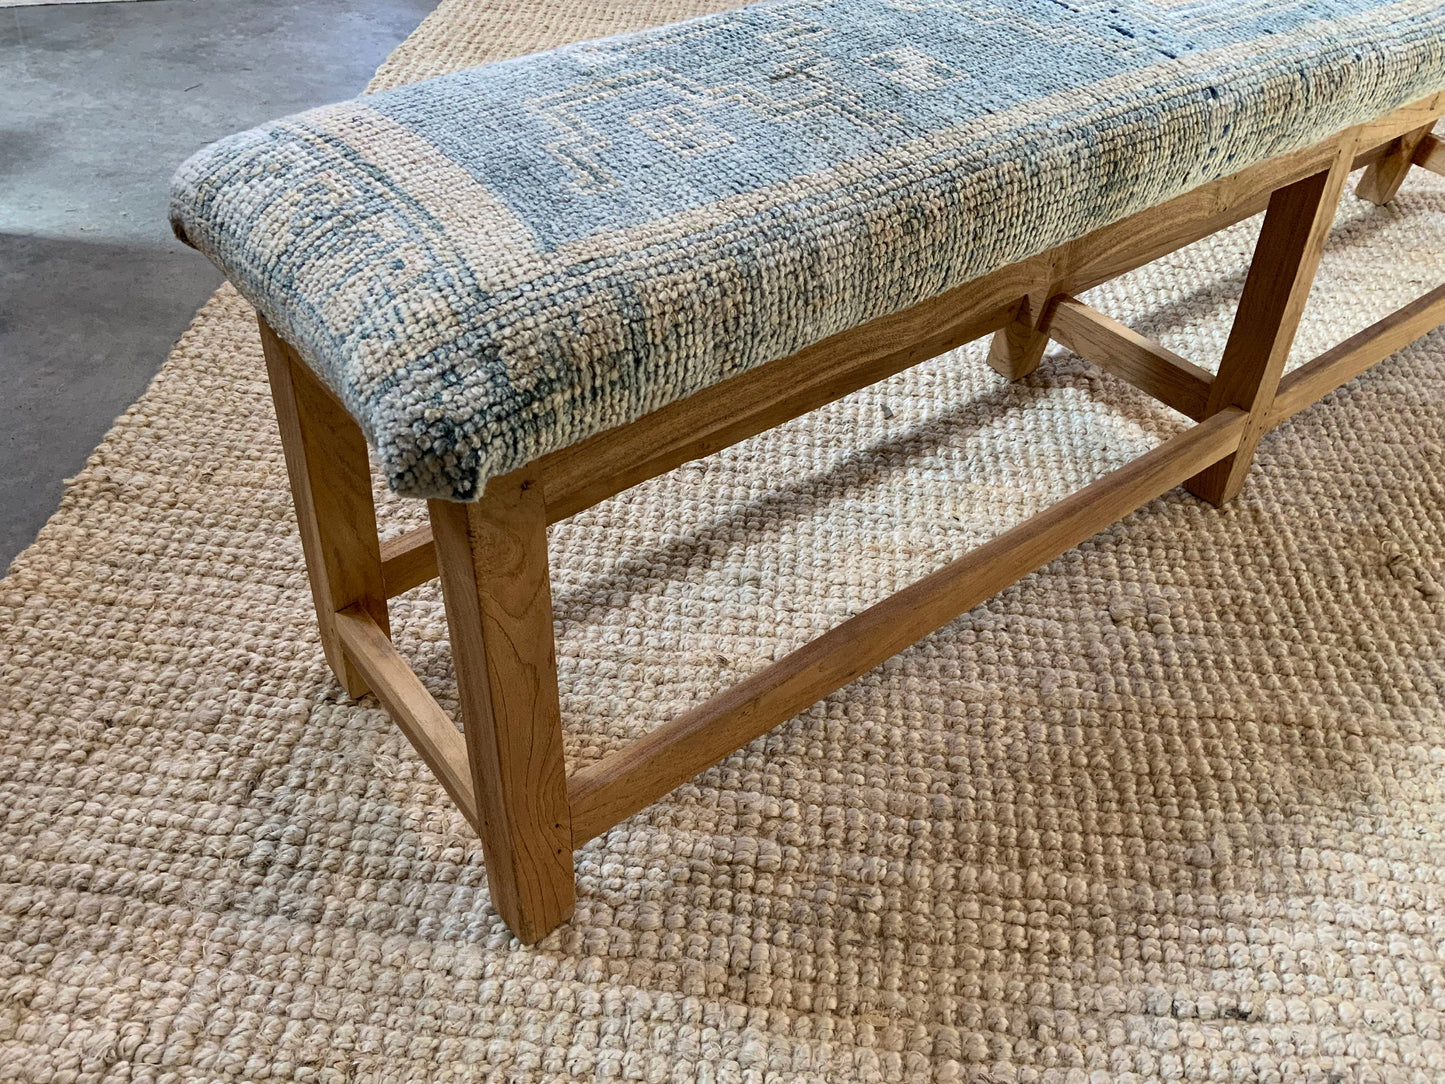 LG - Vintage Rug Upholstered Bleached Wood Bench - A